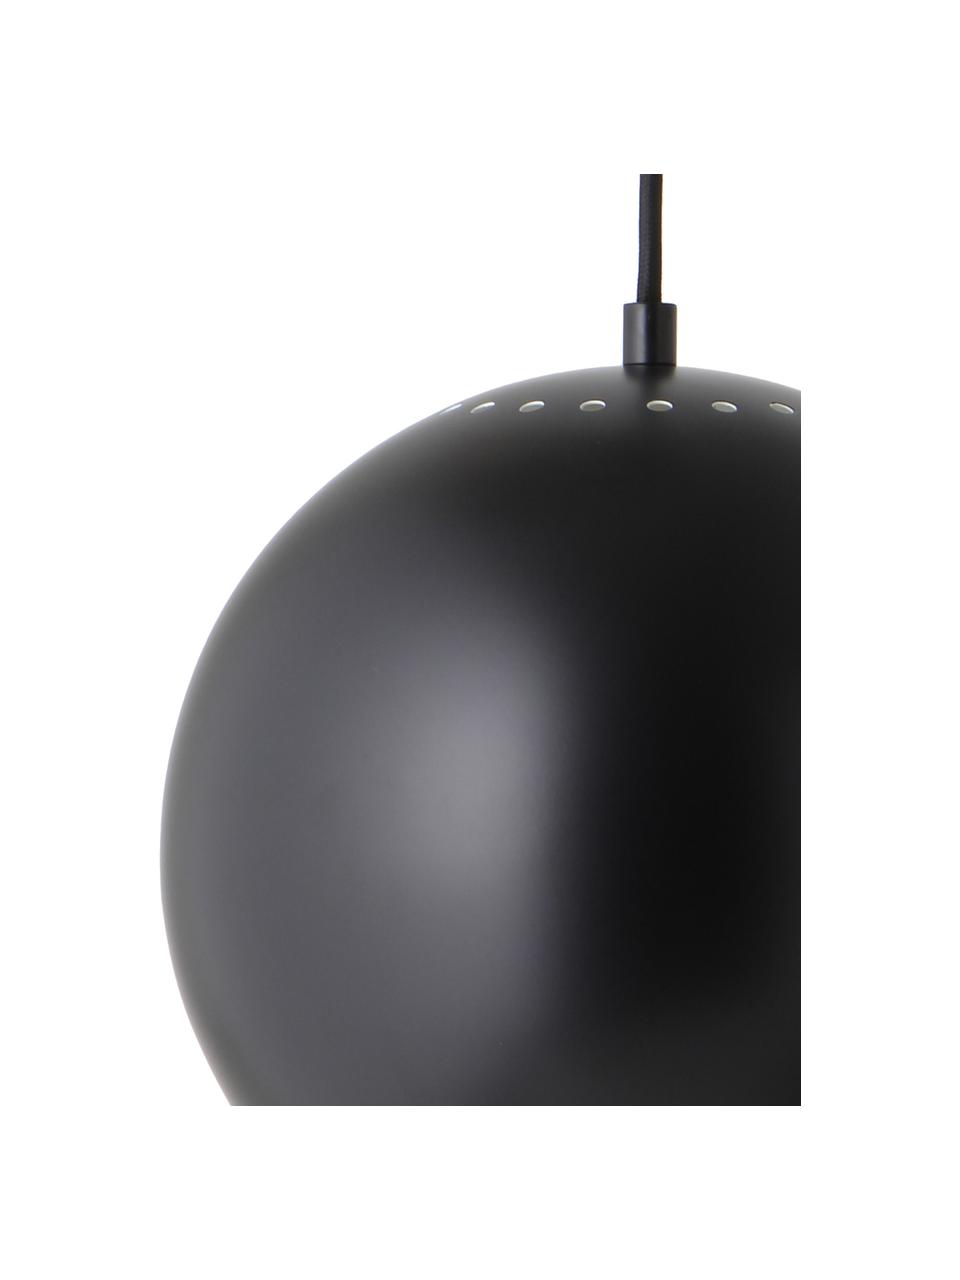 Lámpara de techo pequeña esferica Ball, Pantalla: metal recubierto, Anclaje: metal recubierto, Cable: cubierto en tela, Negro, blanco, Ø 25 x Al 20 cm